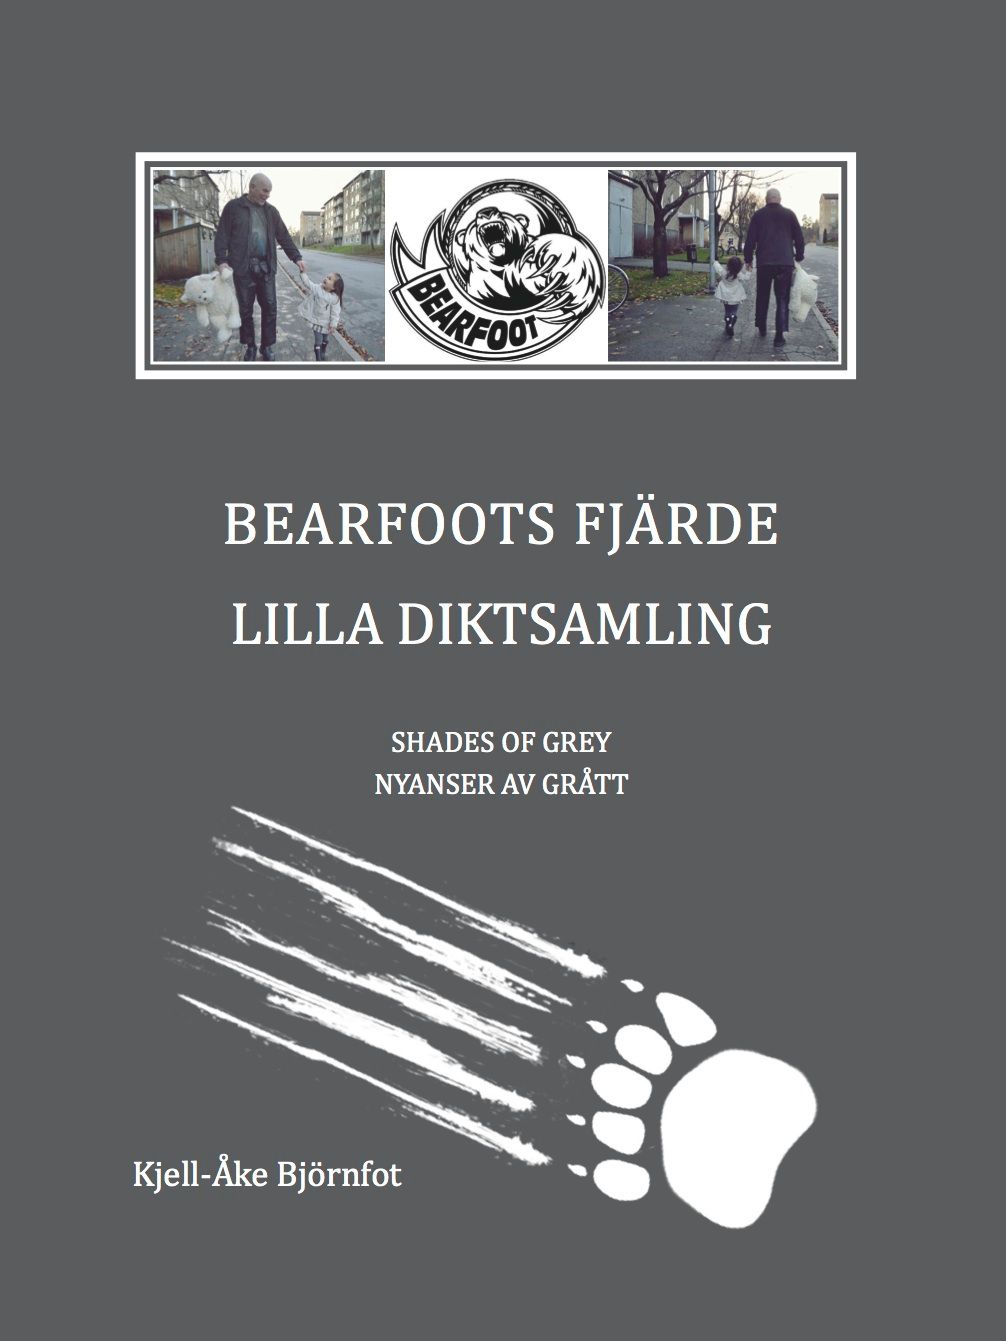 BEARFOOTS FJÄRDE, e-bok av Kjell-Åke Björnfot